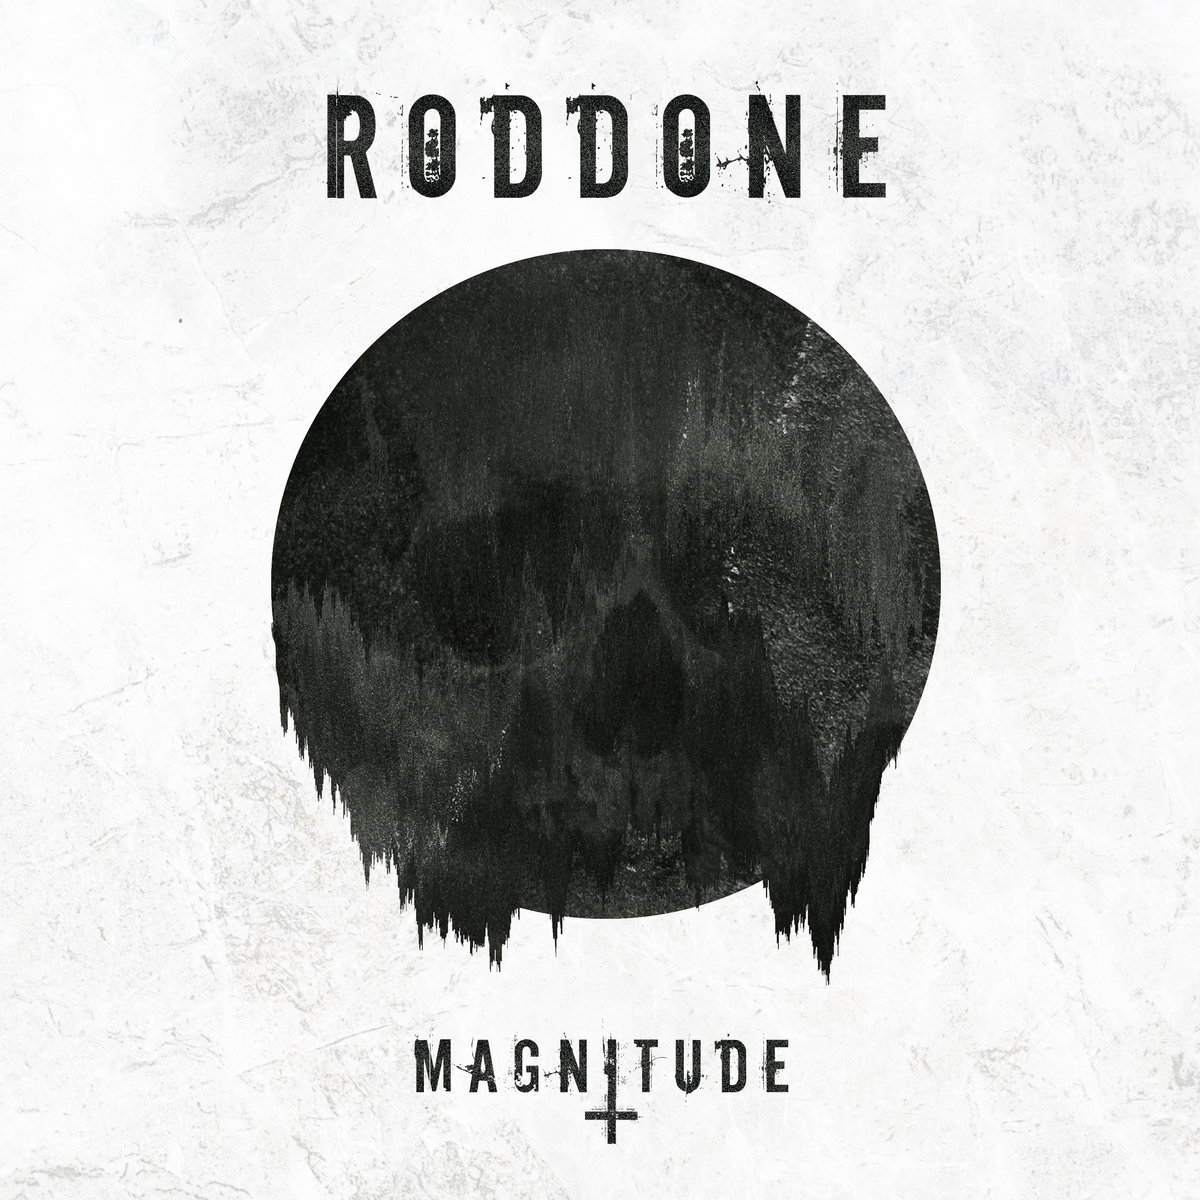 RODDONE - Magnitude cover 